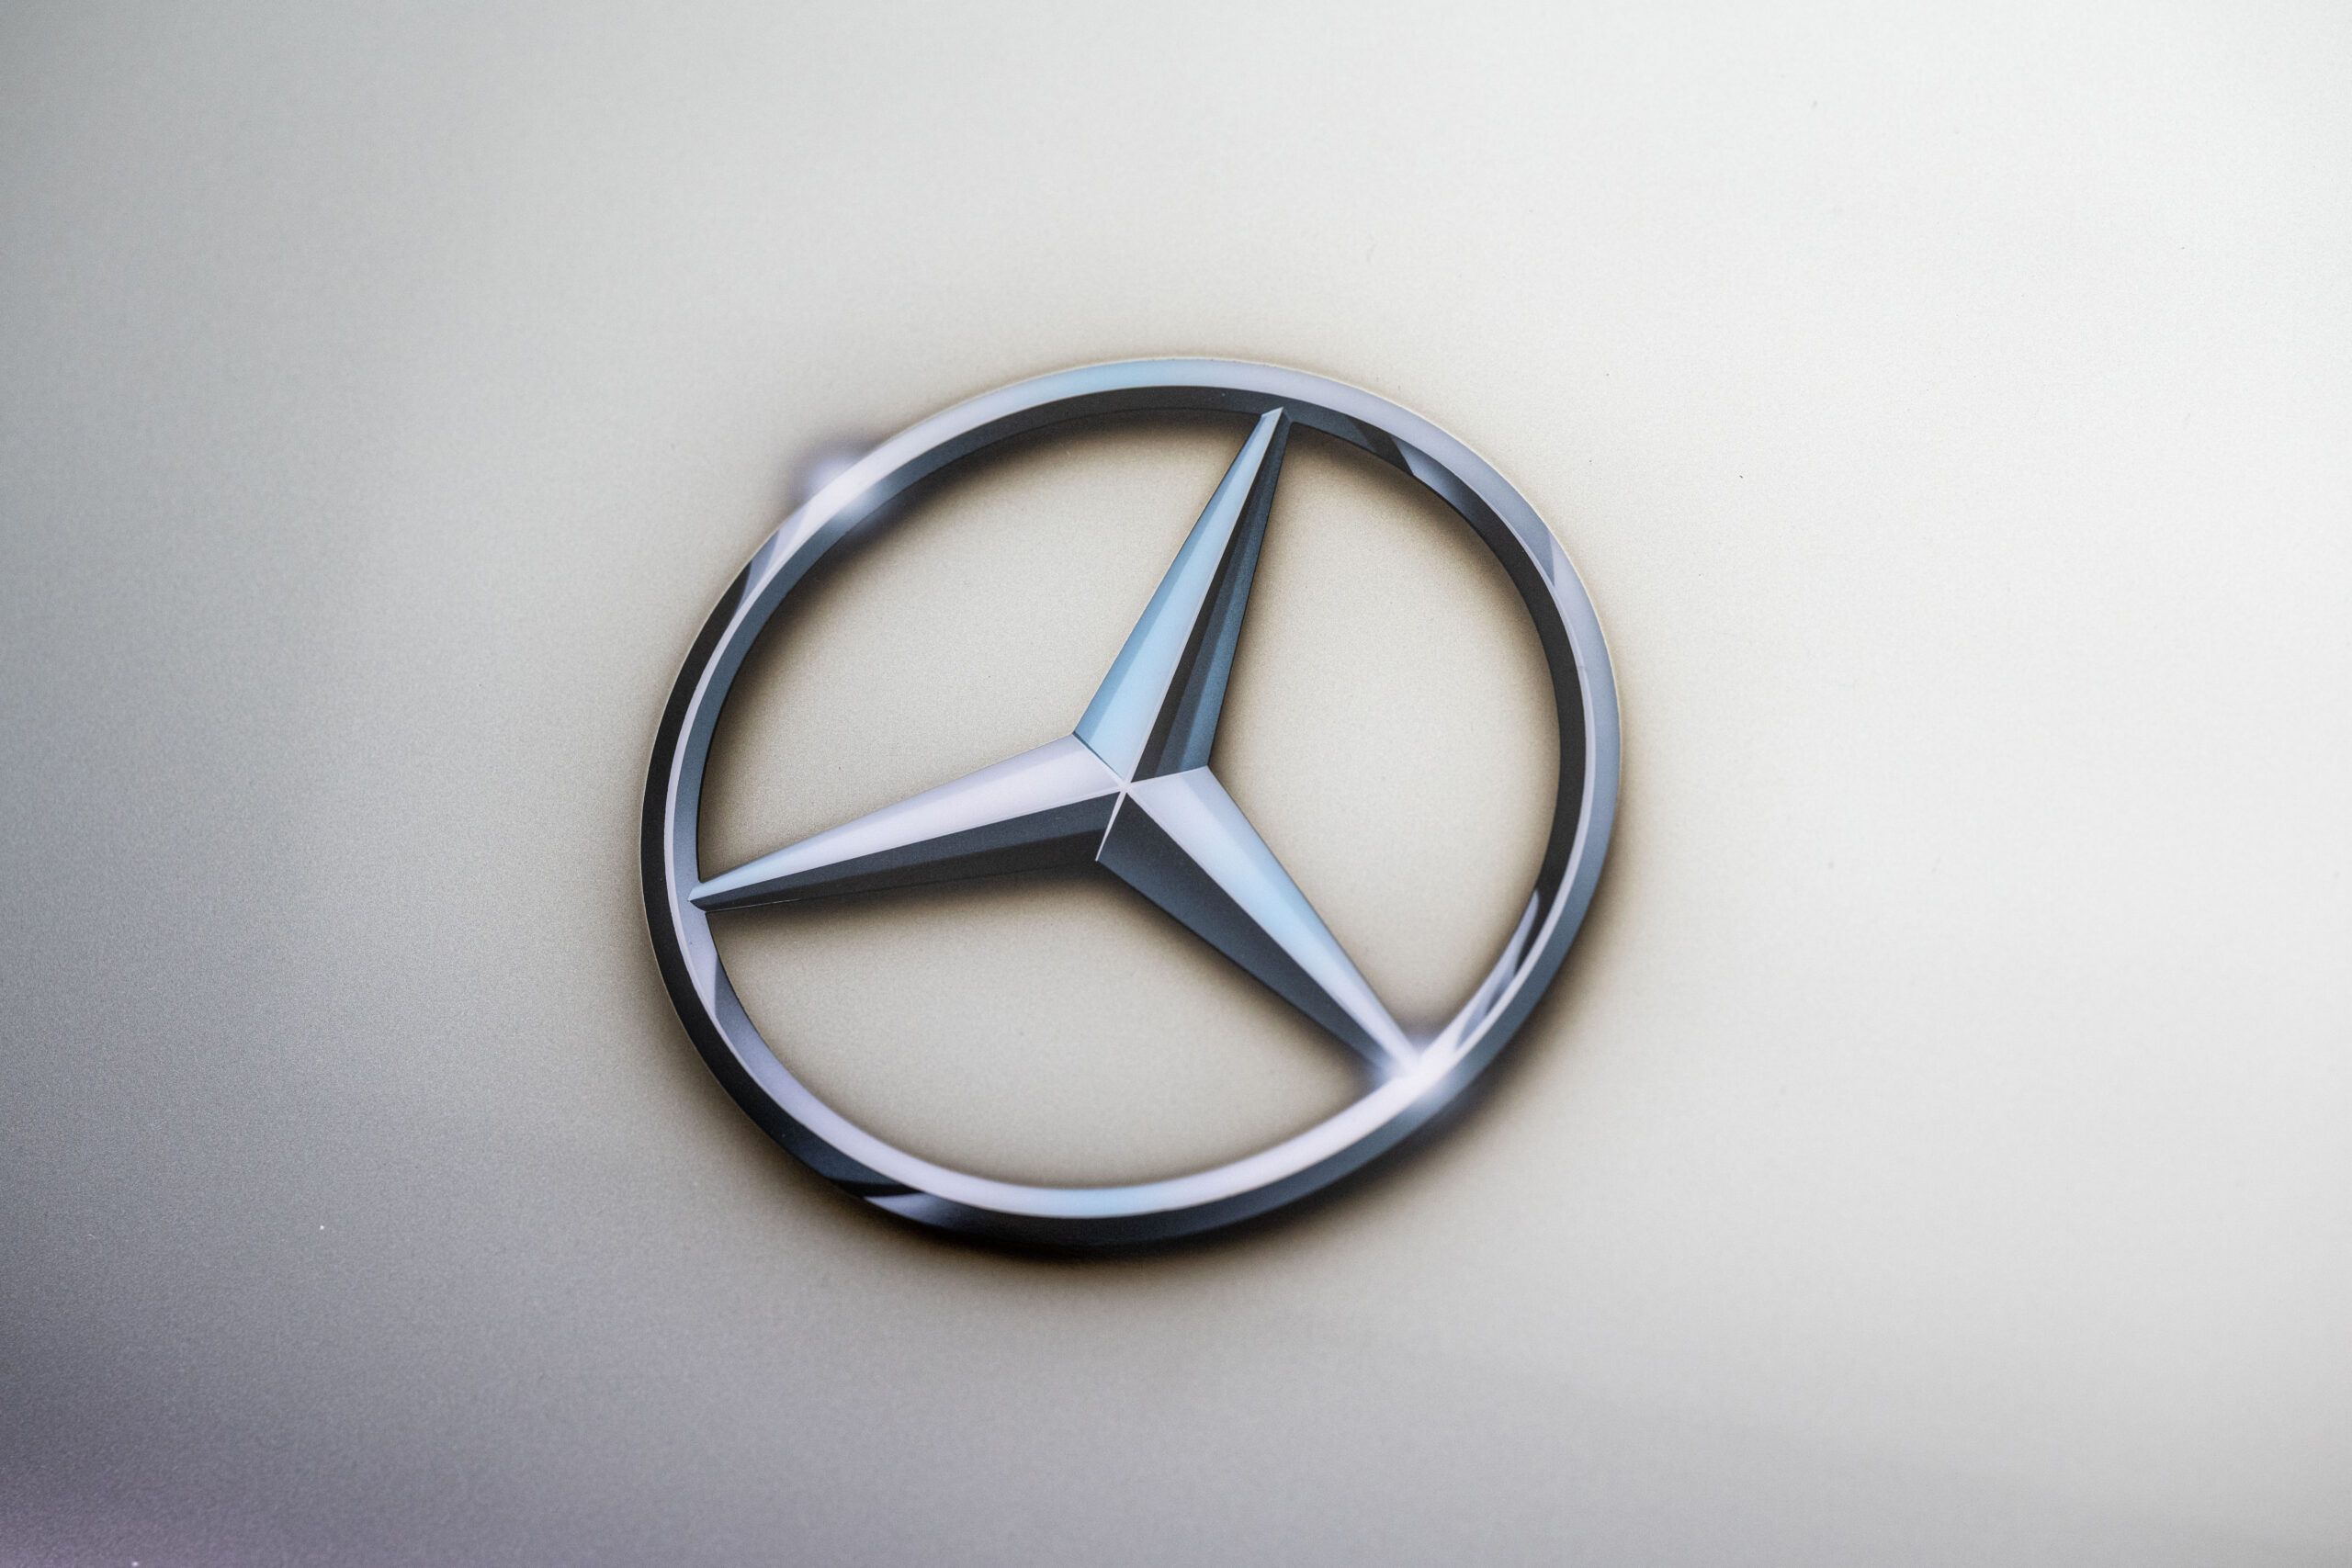 Na compra de veículos usados, portugueses preferem a Mercedes: saiba quais são as outras marcas escolhidas